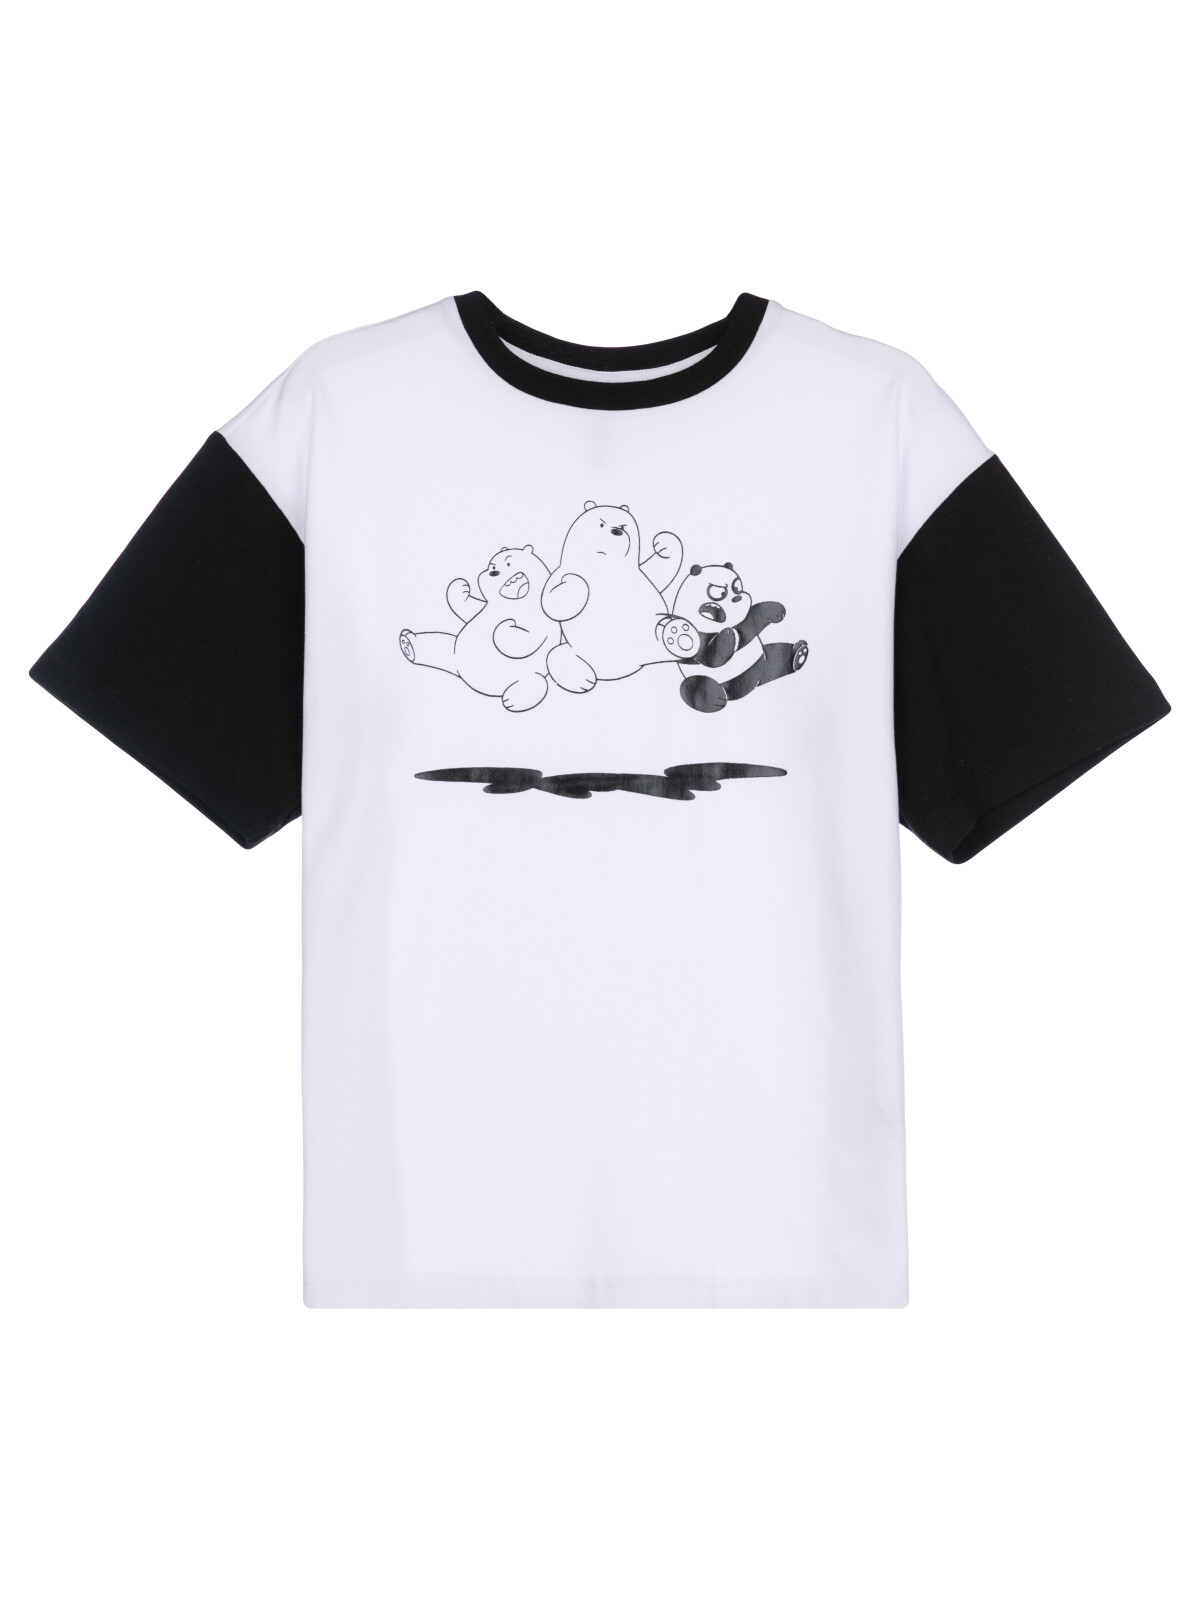 Фуфайка трикотажная для мальчиков PlayToday (футболка), белый,черный, 134